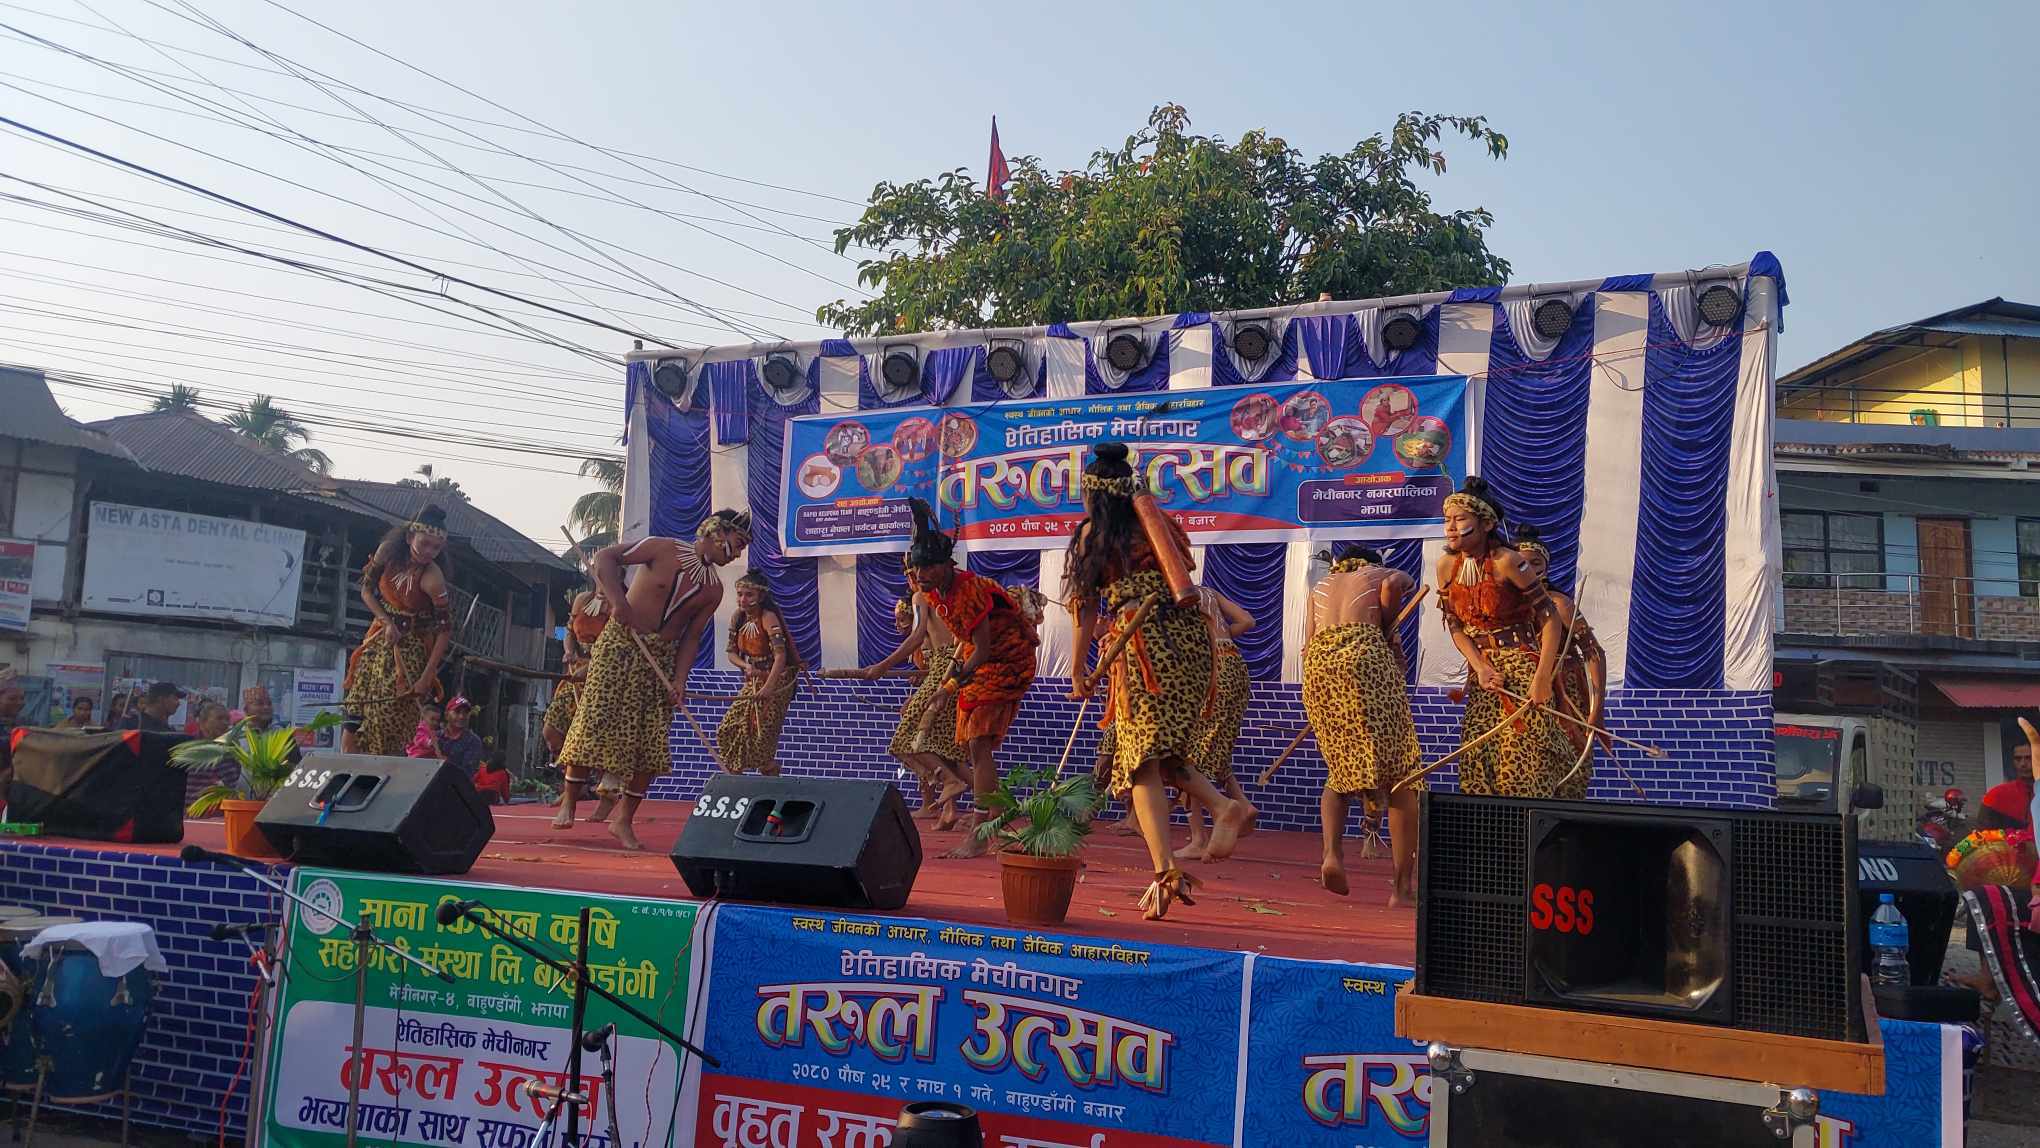 बाहुनडाँगीमा तरुल महोत्सवको भव्य उद्घाटन : उत्साहित स्थानीय